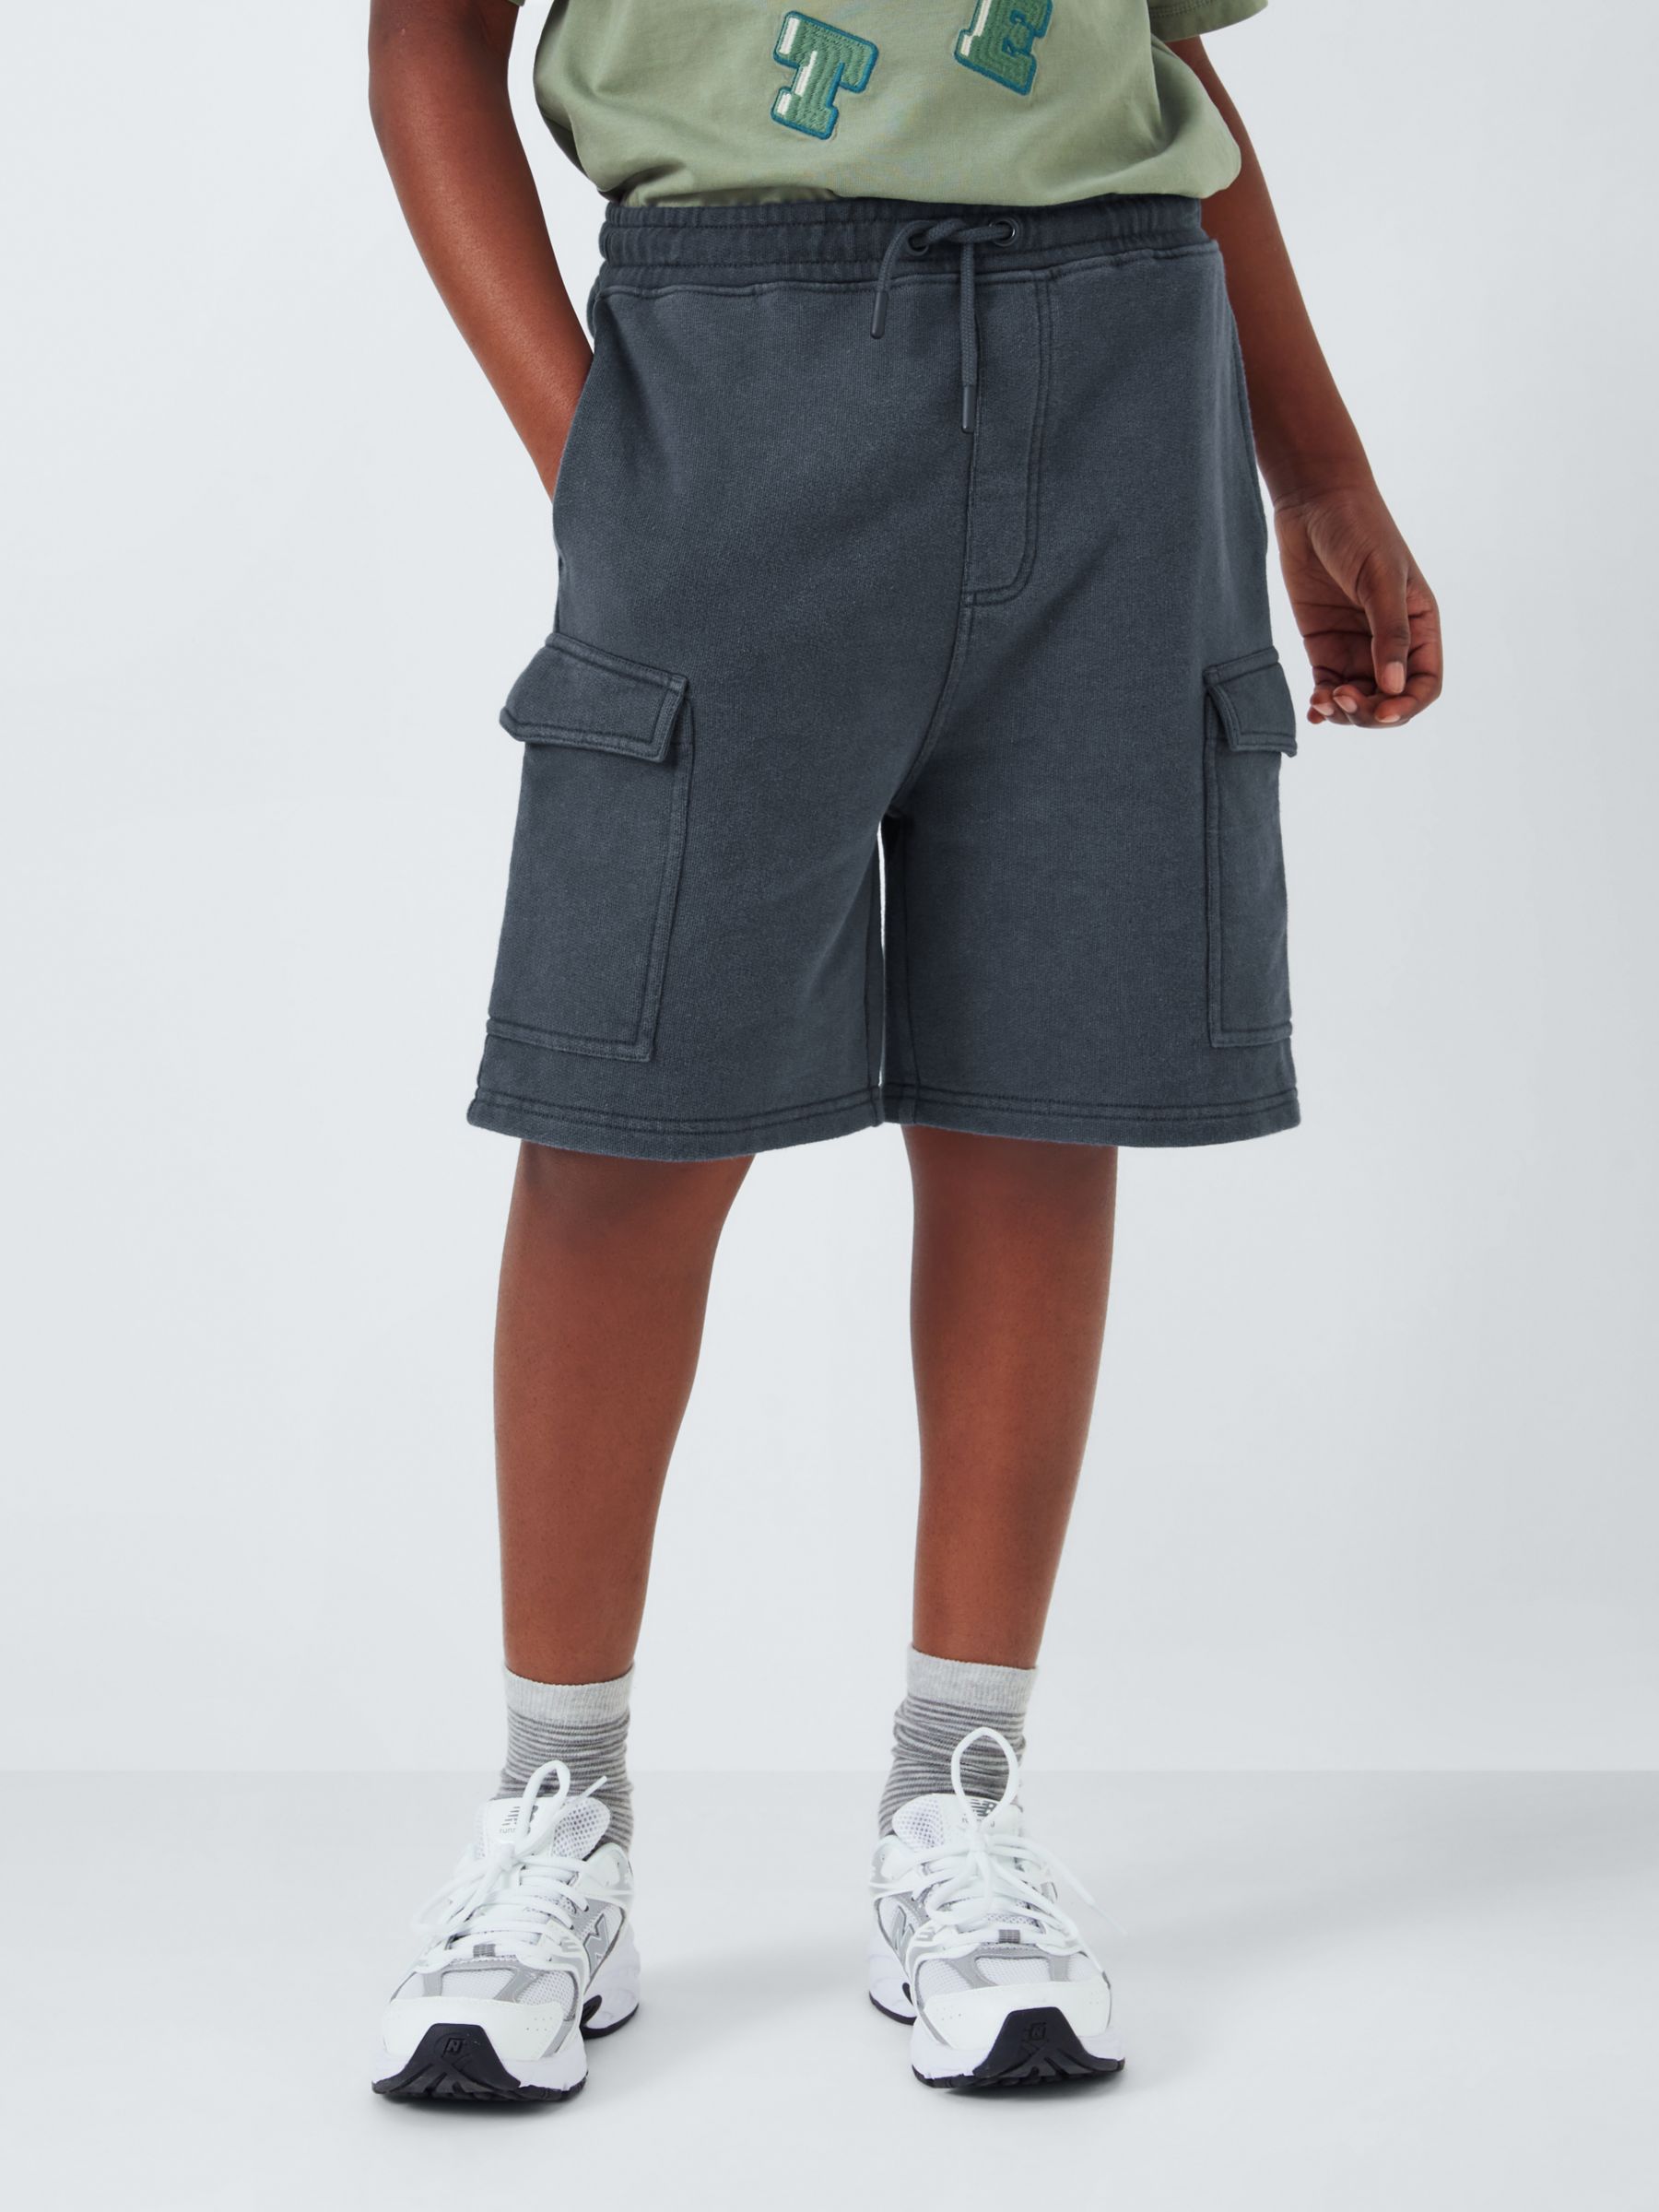 John Lewis Kids' Jersey Cargo Shorts, Black, 11 years